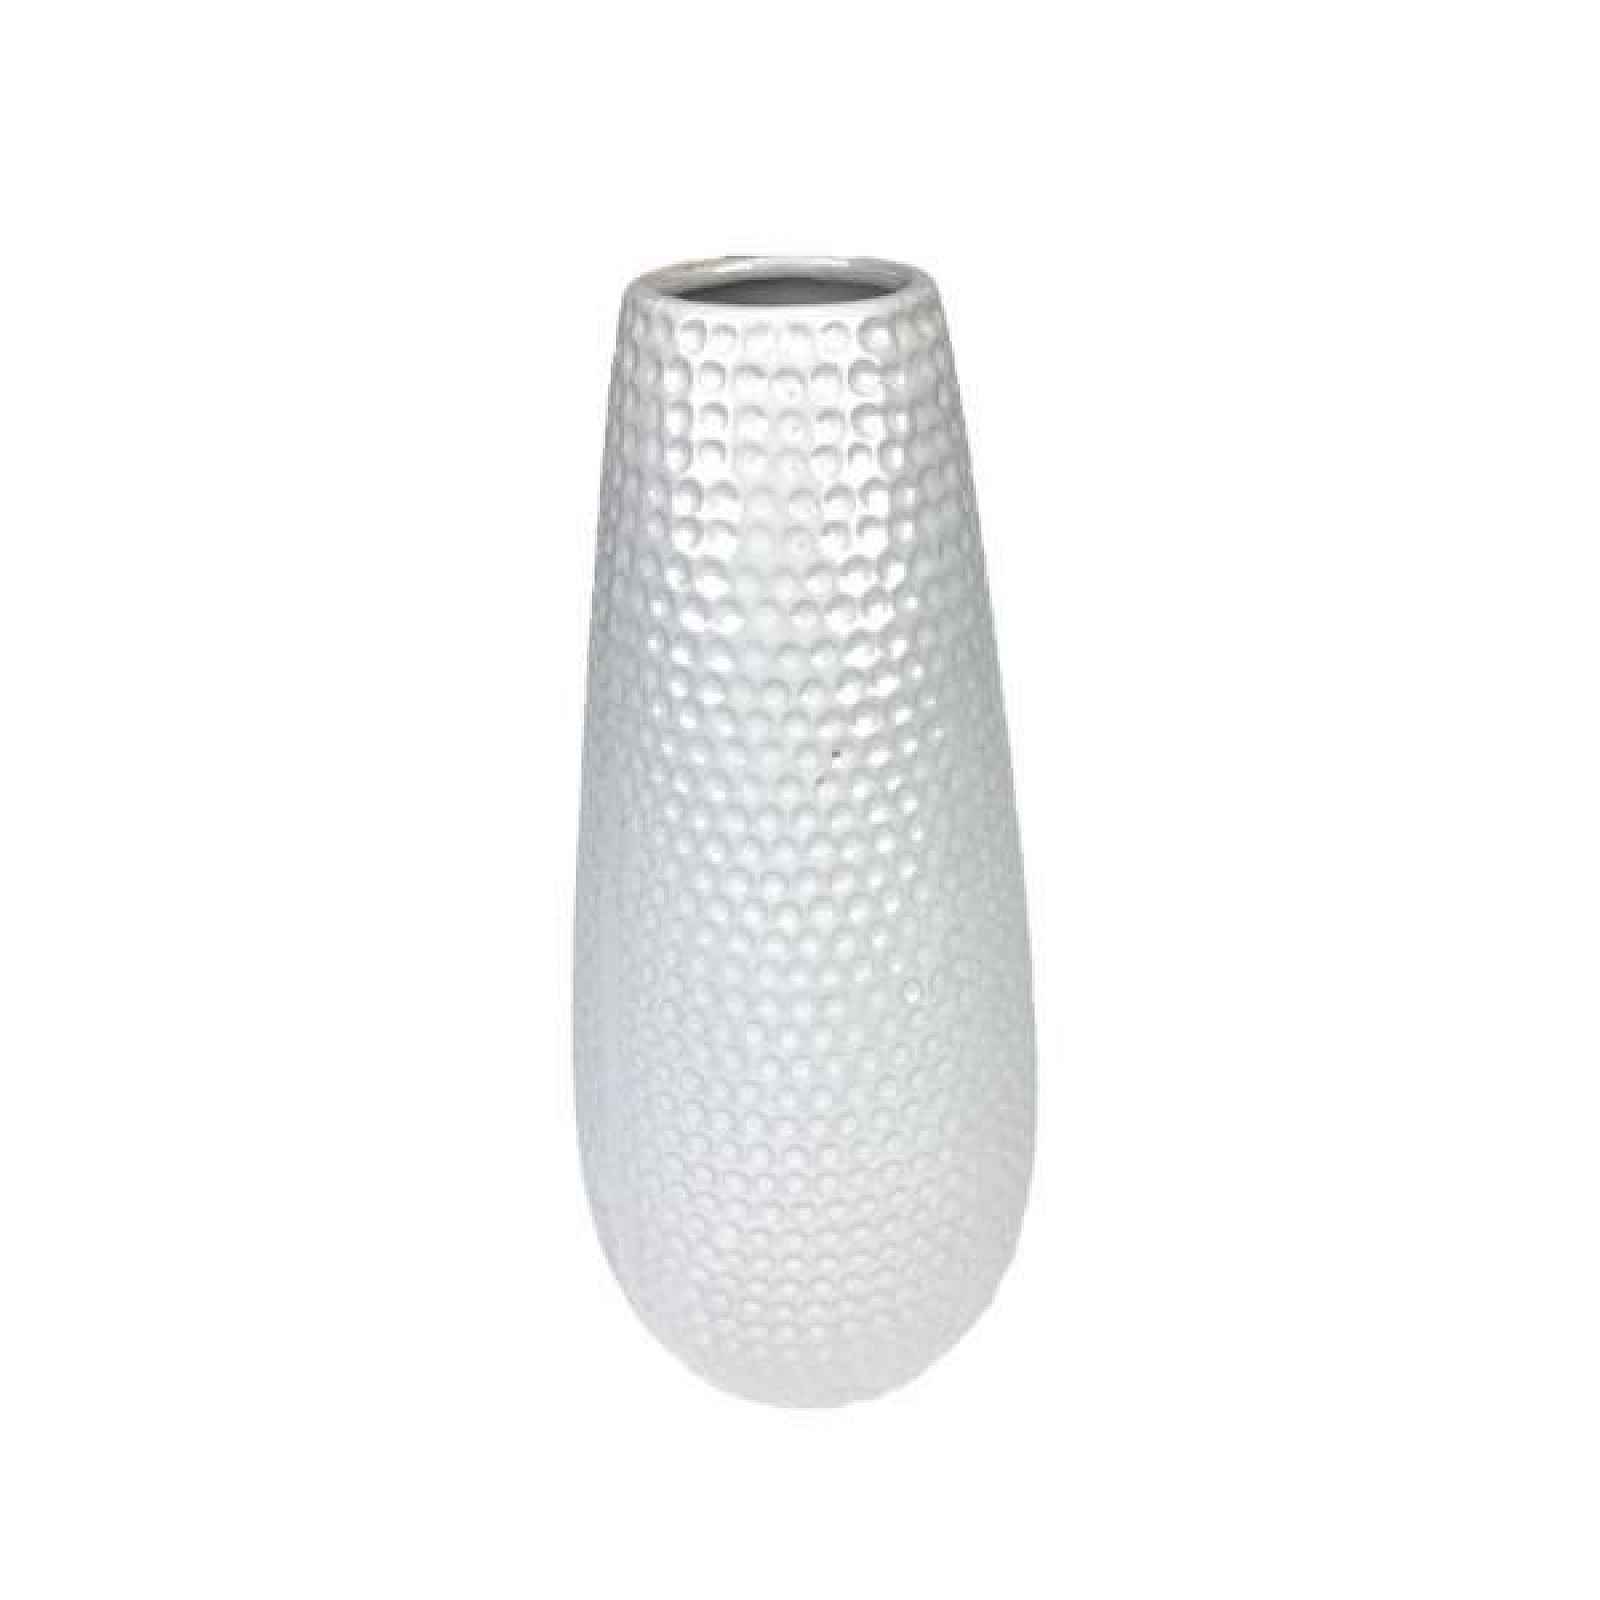 Váza keramická válcová s důlky bílá 24,5cm